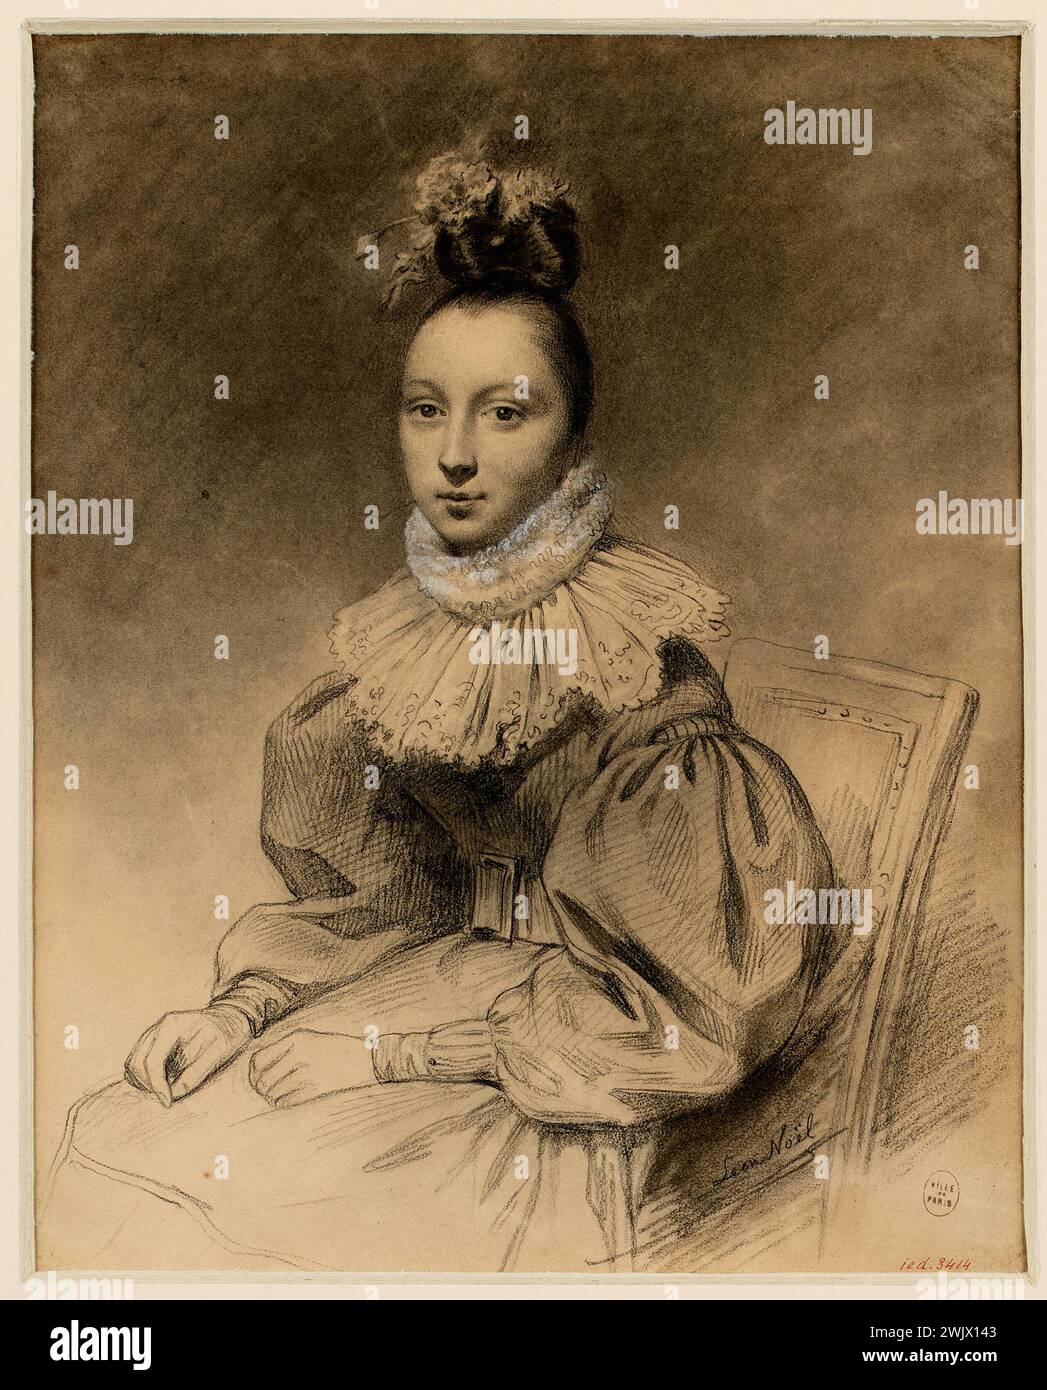 Noel, Alphonse Léon (n.1807-02-07-D.1884-01-06), portrait of a young woman, called Elise Jouvenet. (Dummy title). Carnavalet museum, history of Paris. Stock Photo